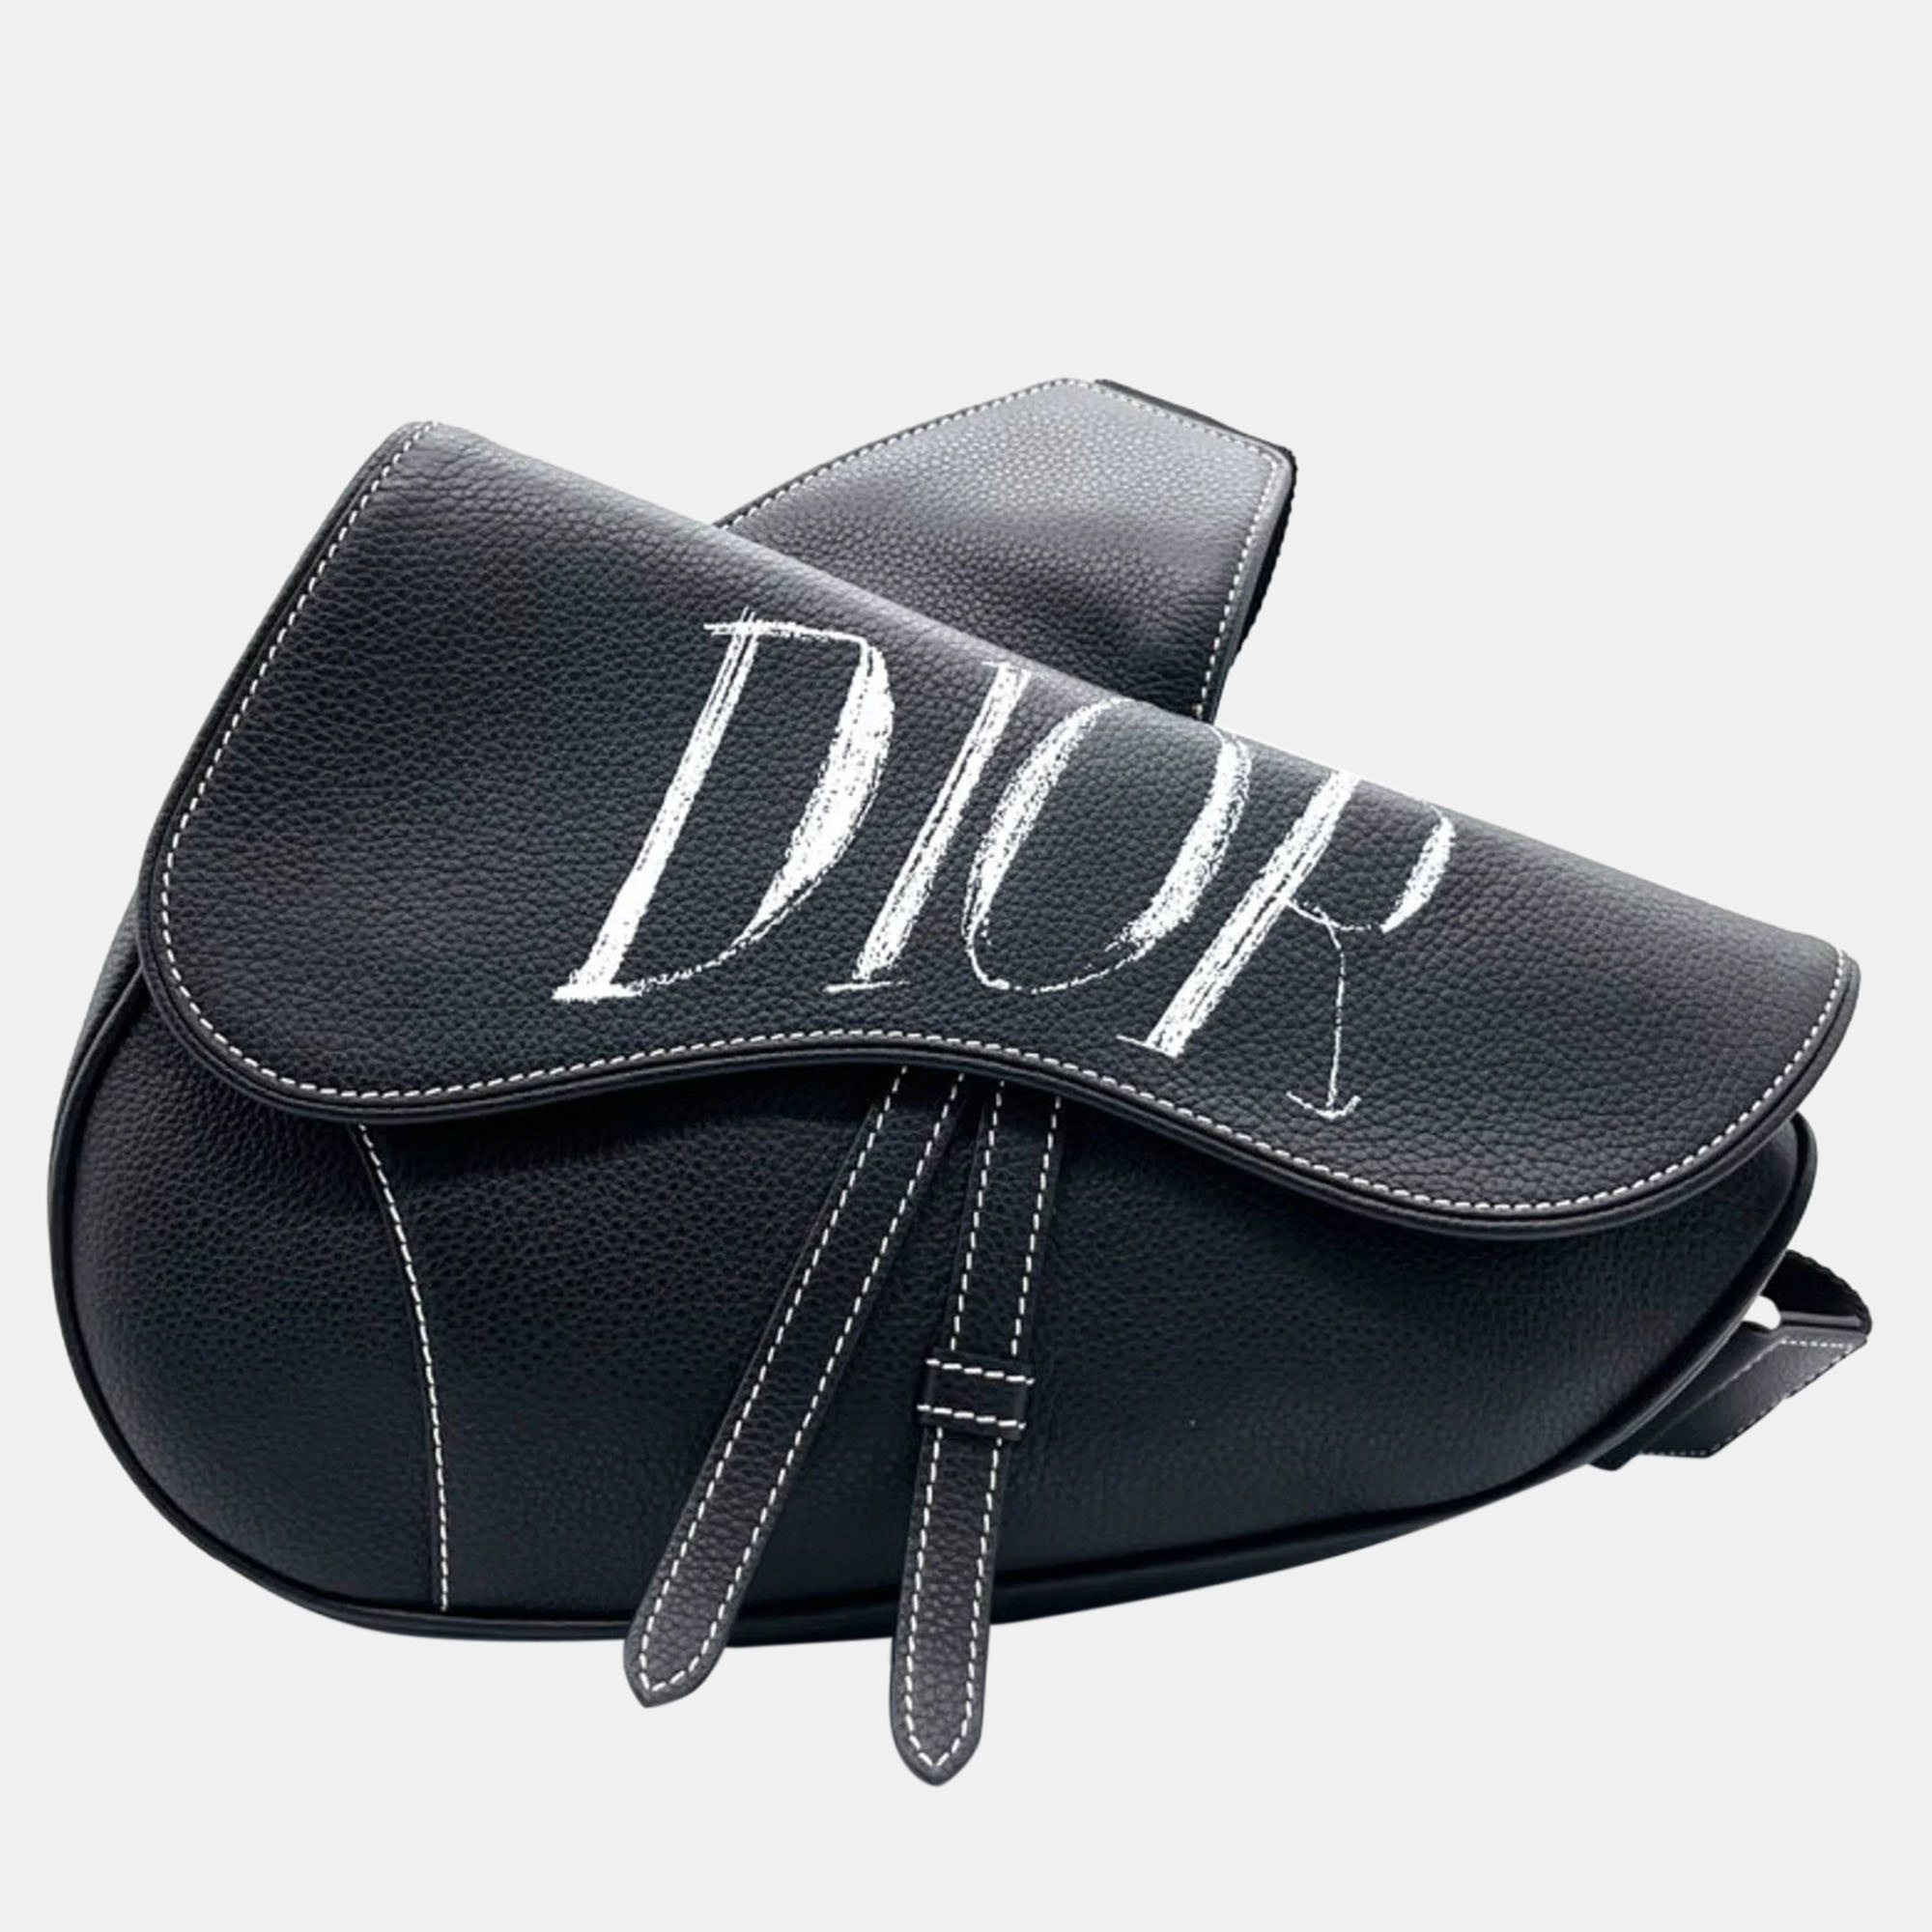 Dior black leather alex foxton saddle shoulder bag